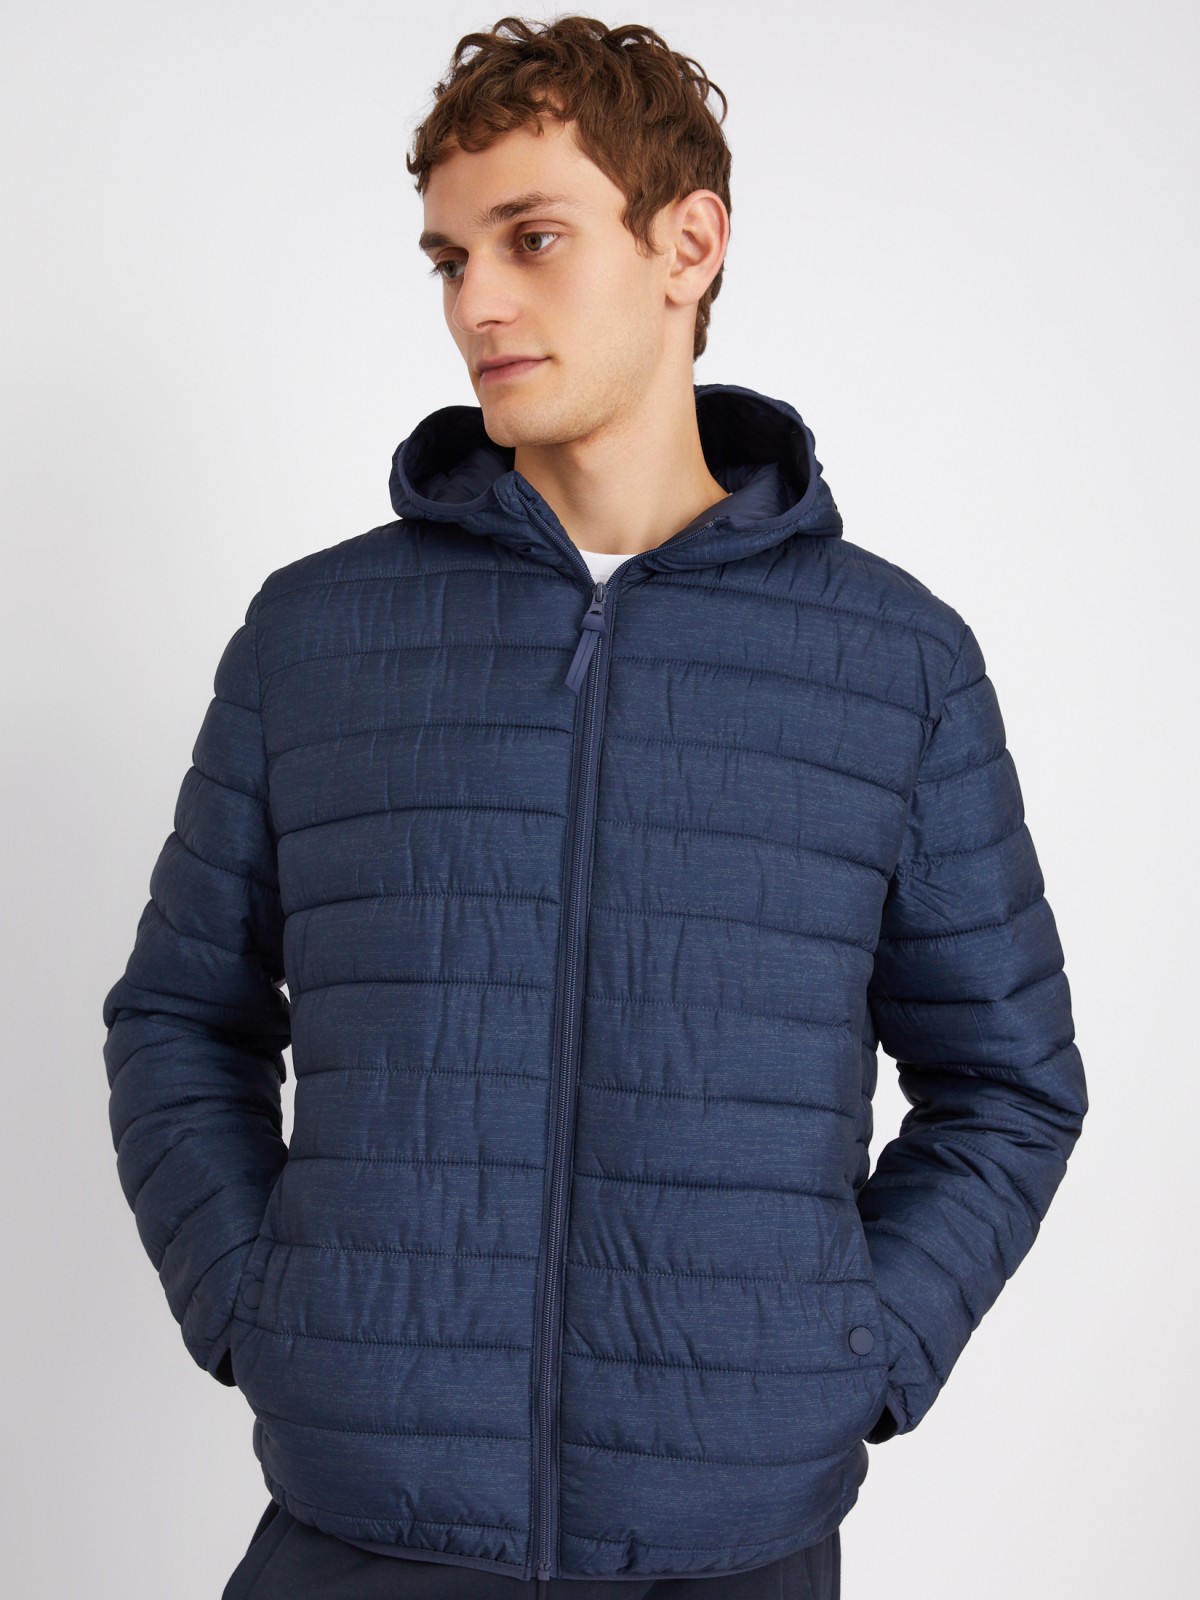 Лёгкая утеплённая стёганая куртка на молнии с капюшоном zolla 012335114184, цвет синий, размер L - фото 5